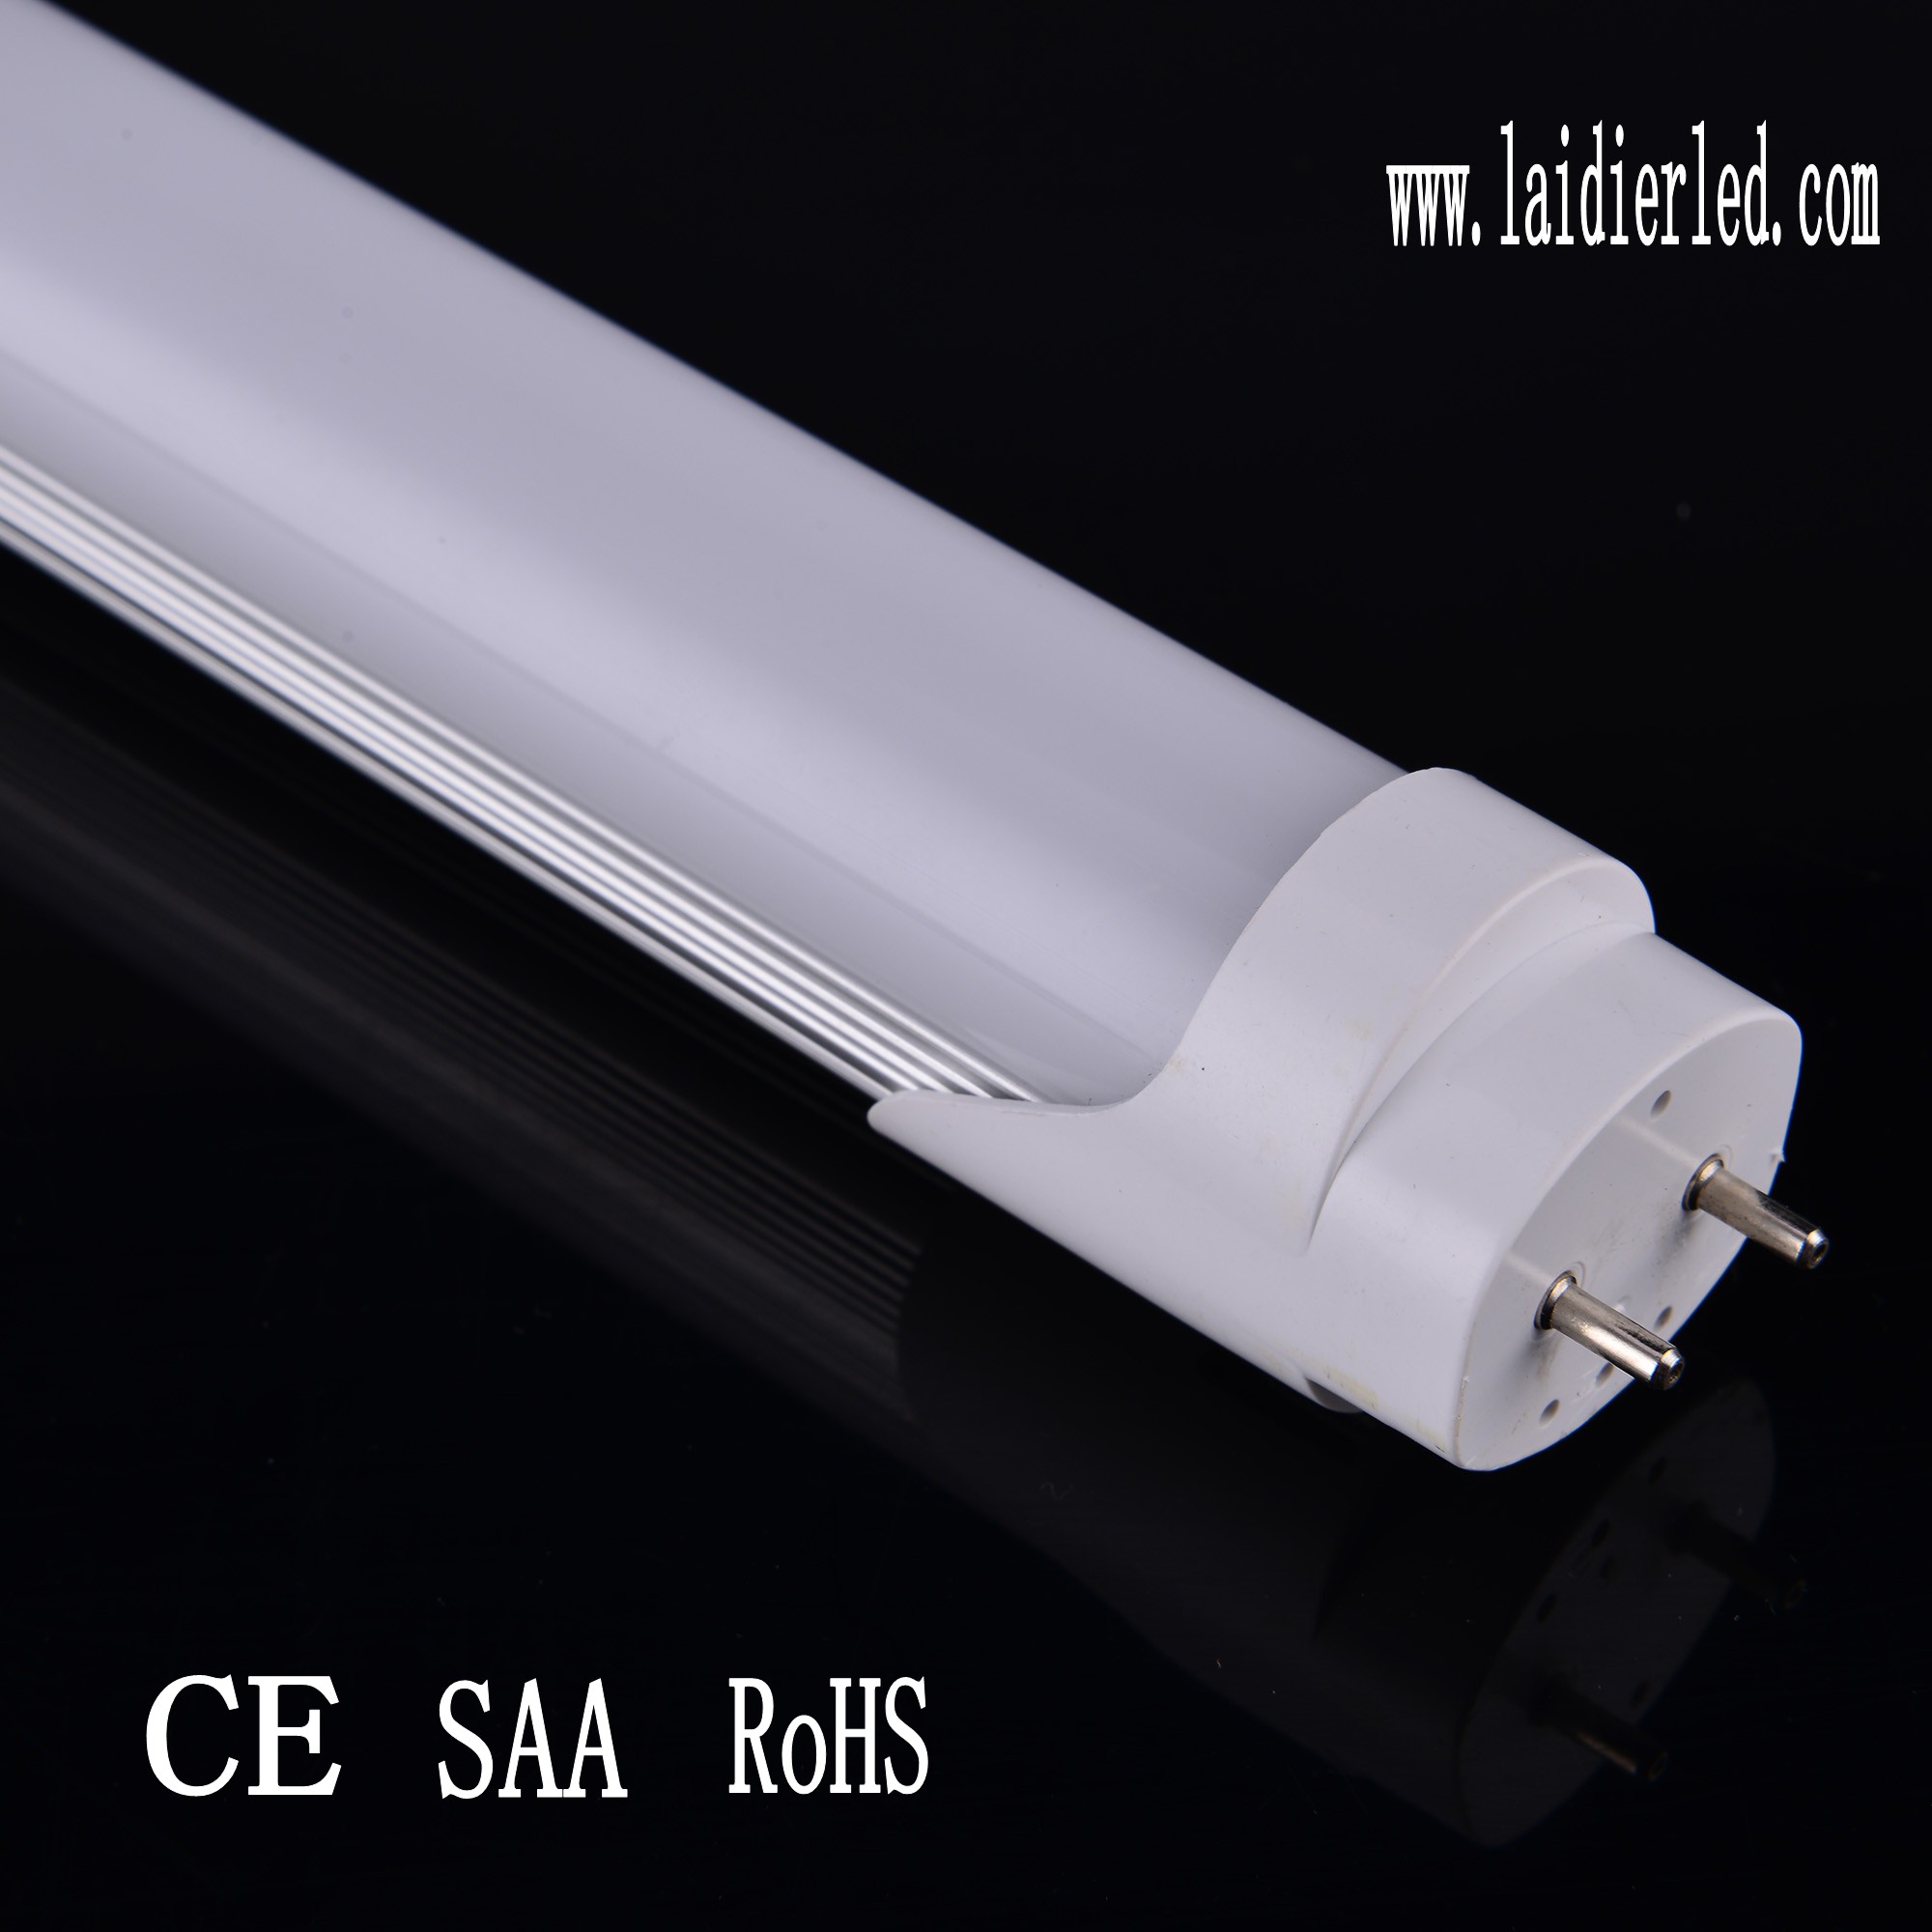 Special design LED Tube T8 1.2M 18W 1700lumens Aluminum PCB